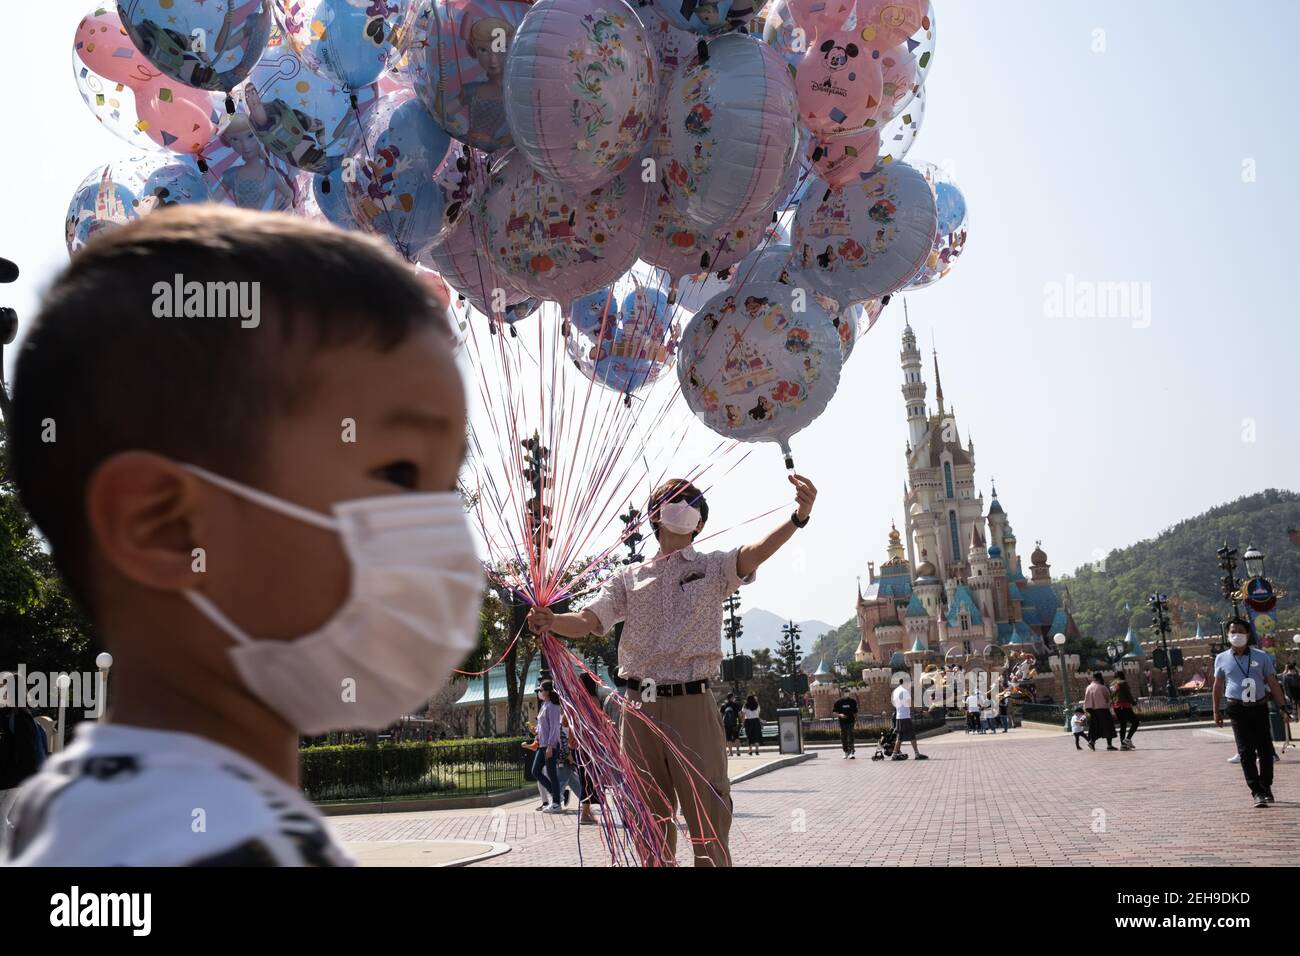 Un employé tenant des ballons gonflables pendant la réouverture du parc Disneyland de Hong Kong alors que le gouvernement perd les mesures de distance sociale du coronavirus (Covid-19). Banque D'Images